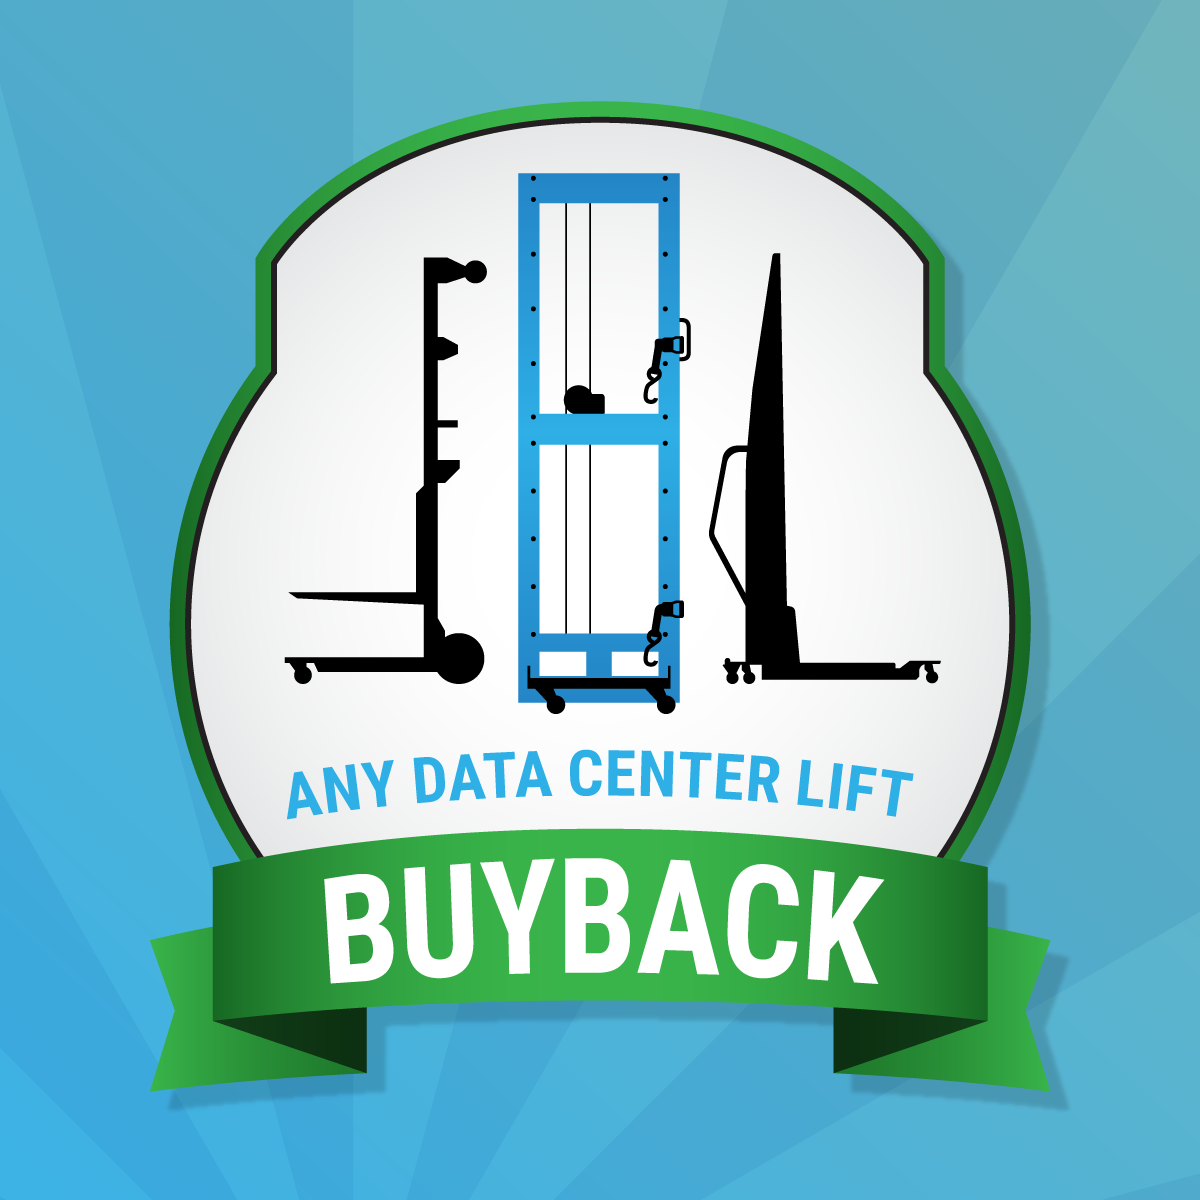 ServerLIFT® buyback program